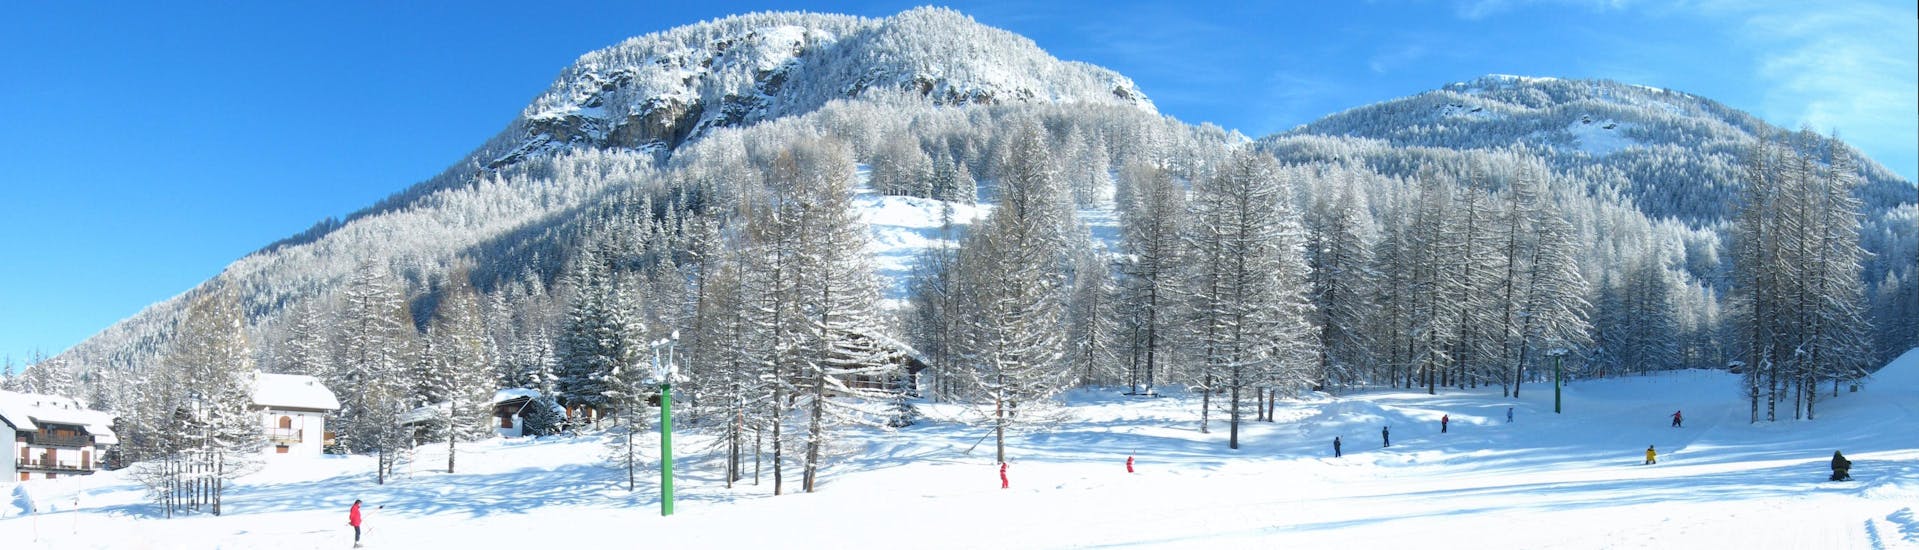 Una maravillosa vista de un soleado paisaje en la cima de la estación de esquí Pragelato, punto de encuentro de las escuelas de esquí para comenzar sus clases de esquí y snowboard.